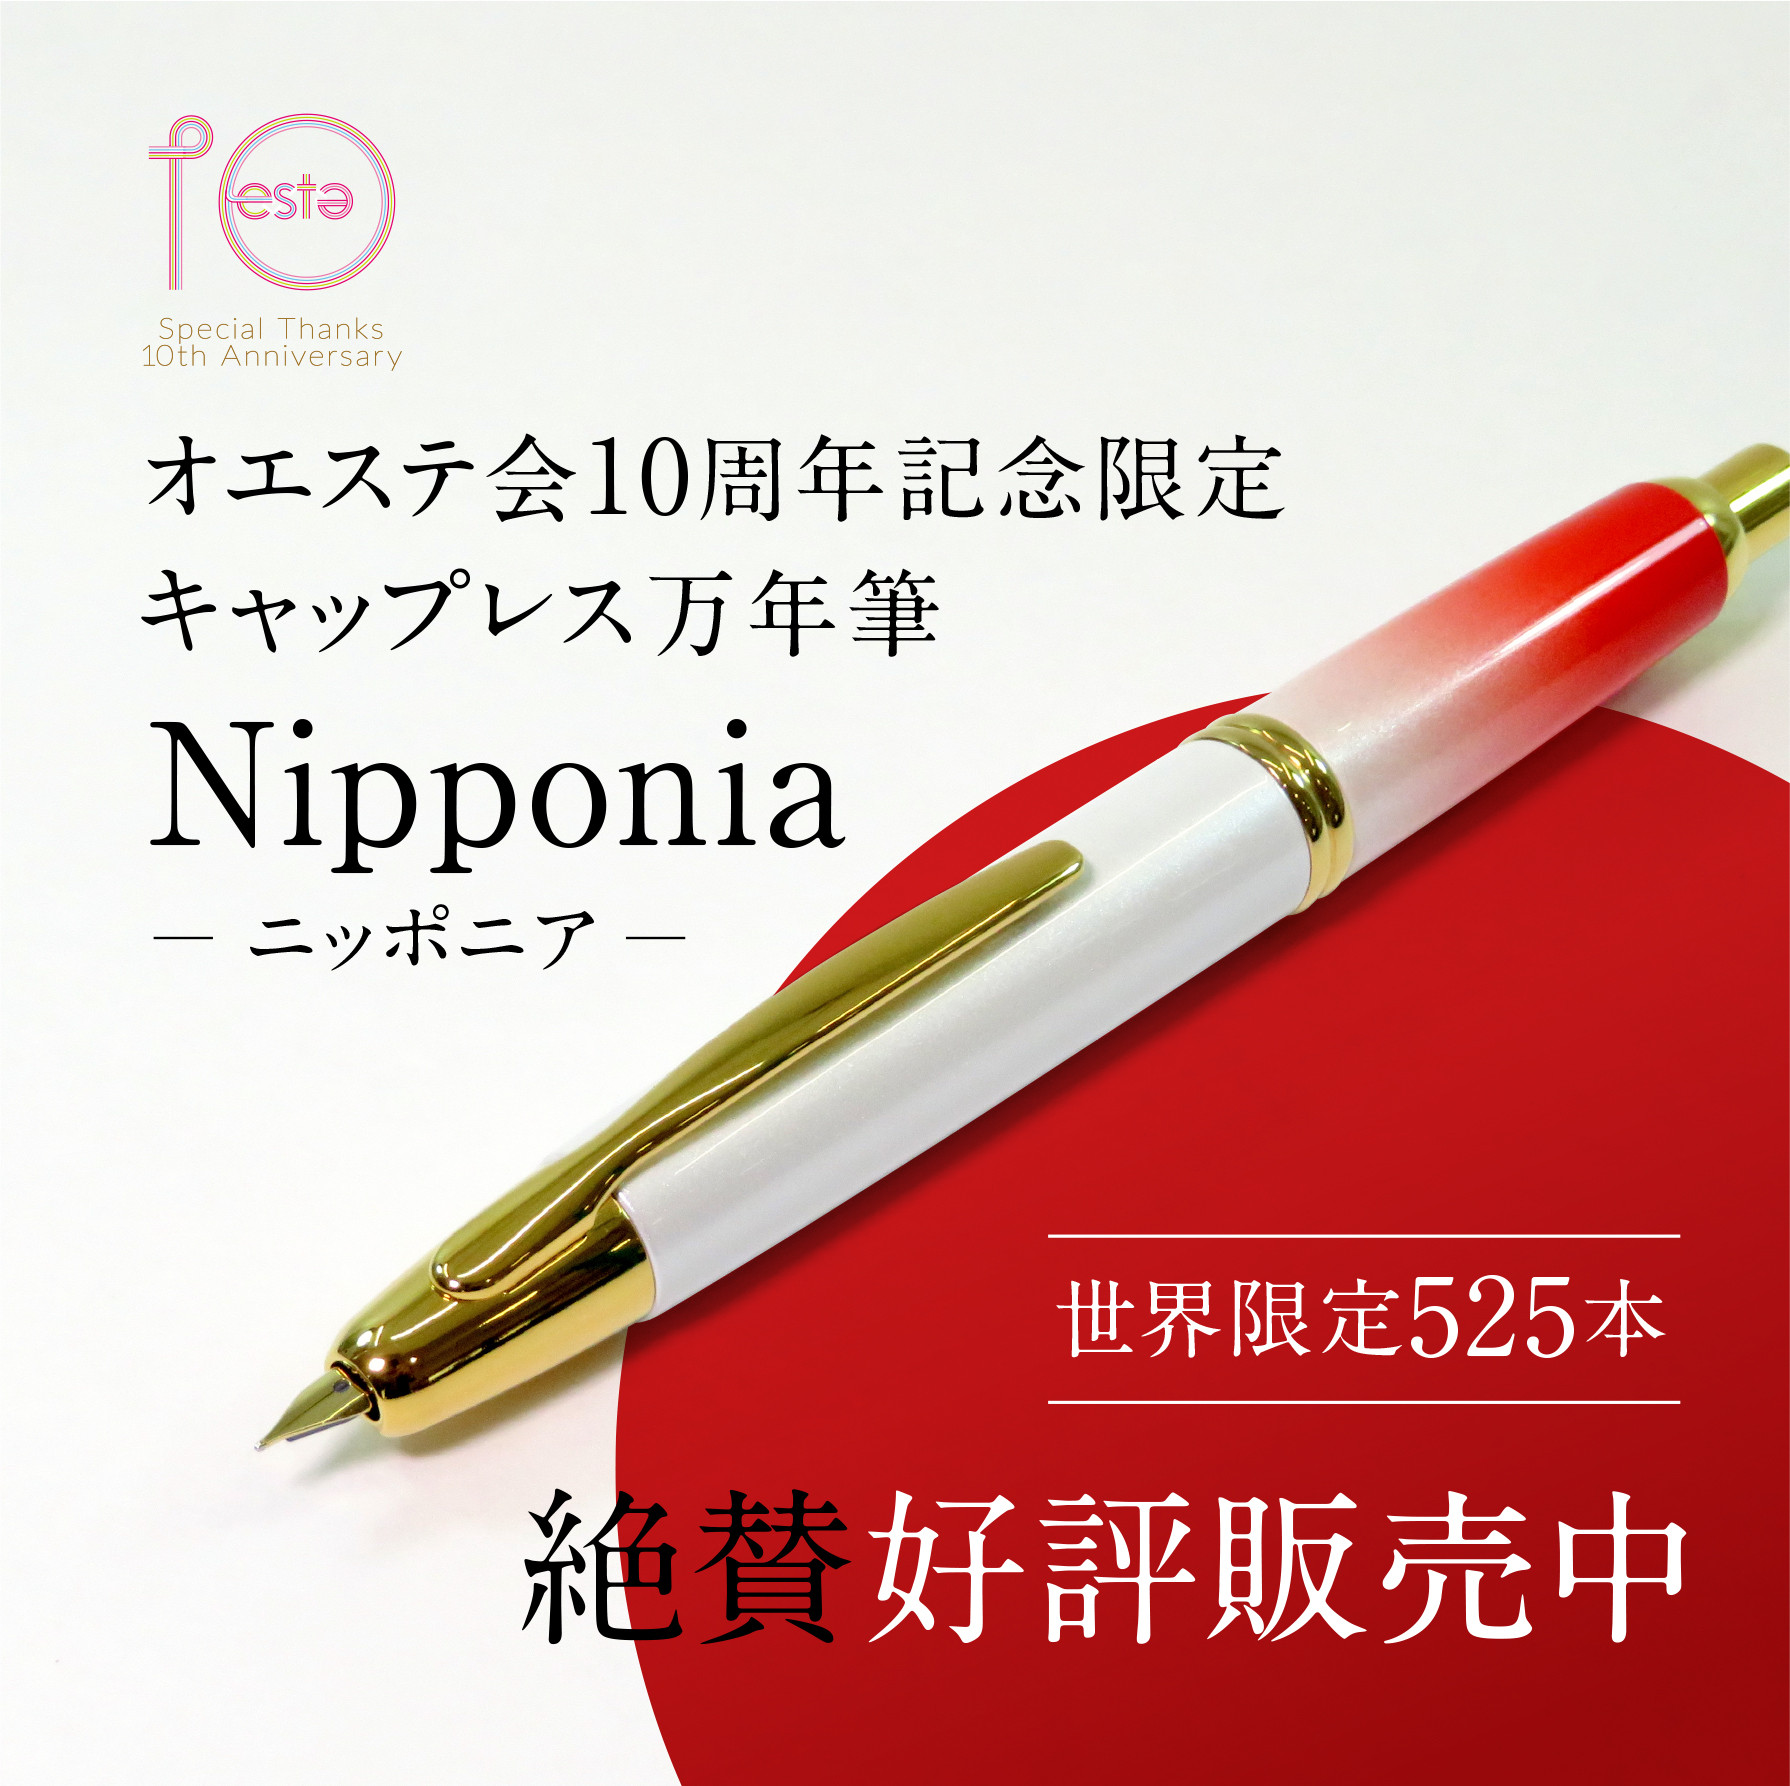 オエステ会限定キャップレス万年筆Nipponia発売しました！